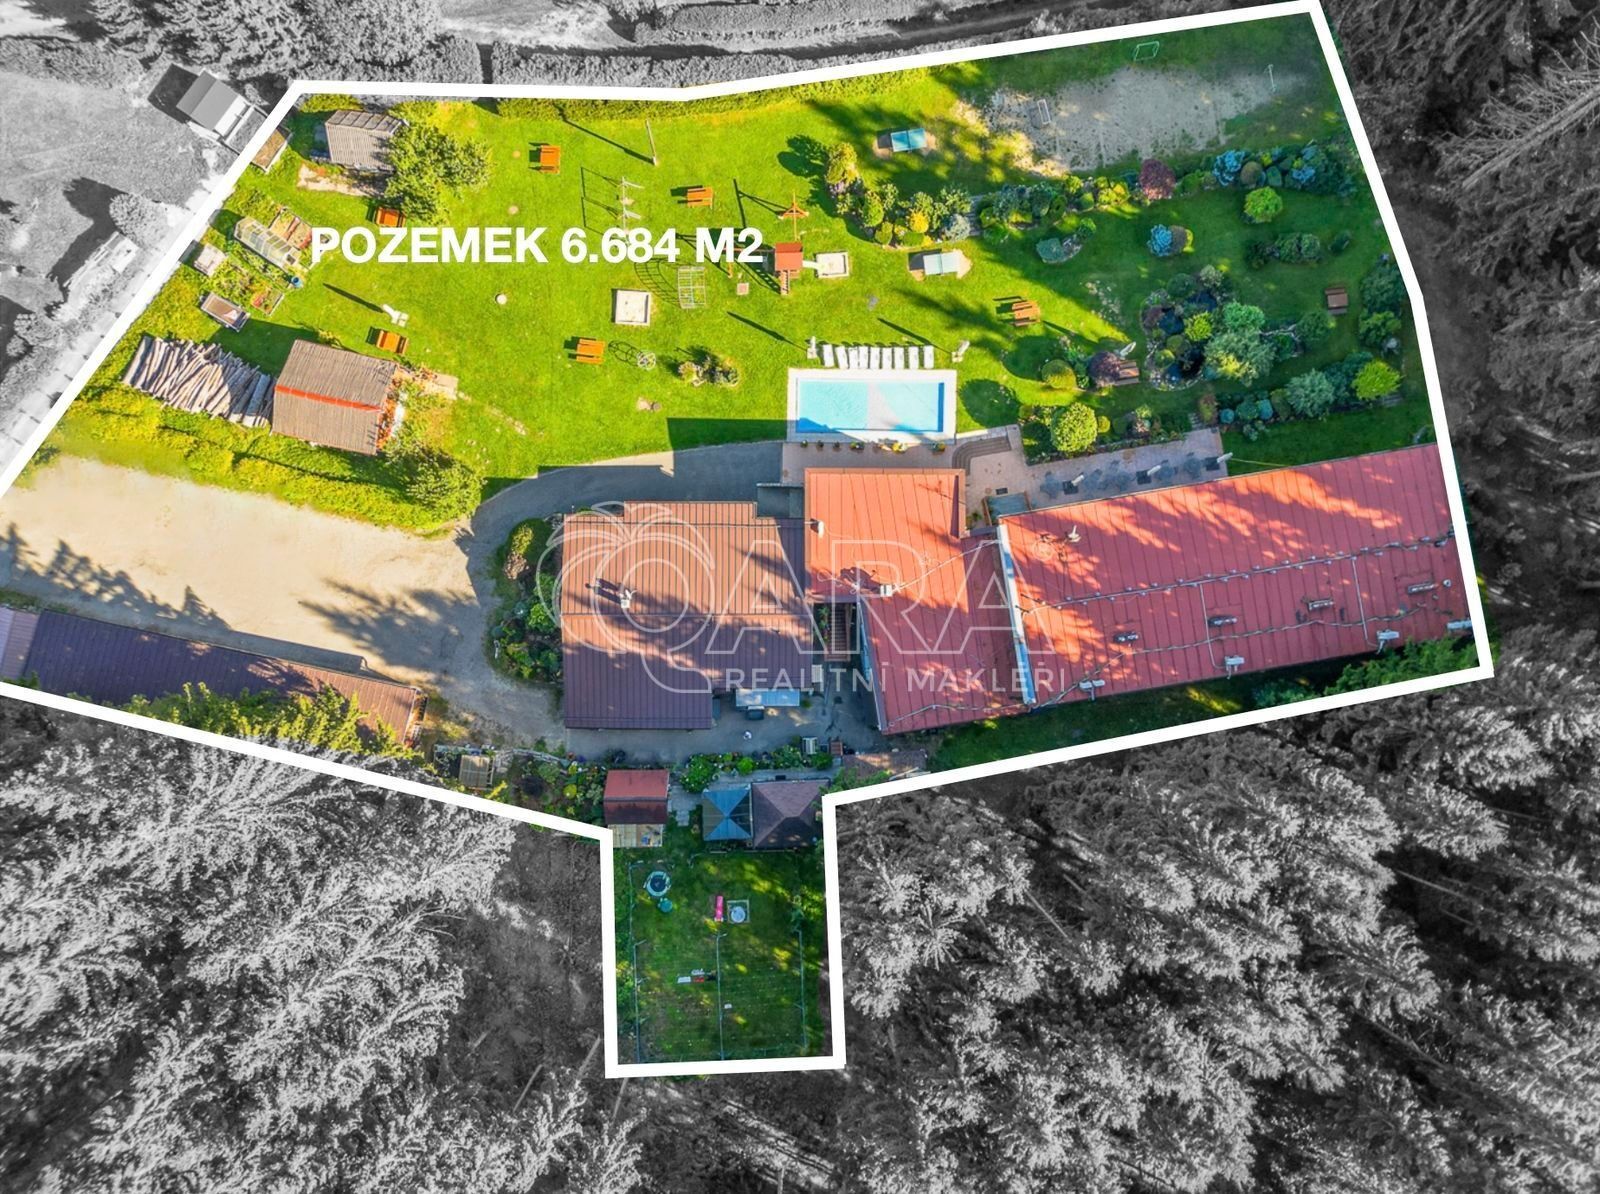 Komerční pozemky, Lipno nad Vltavou, 6 684 m²